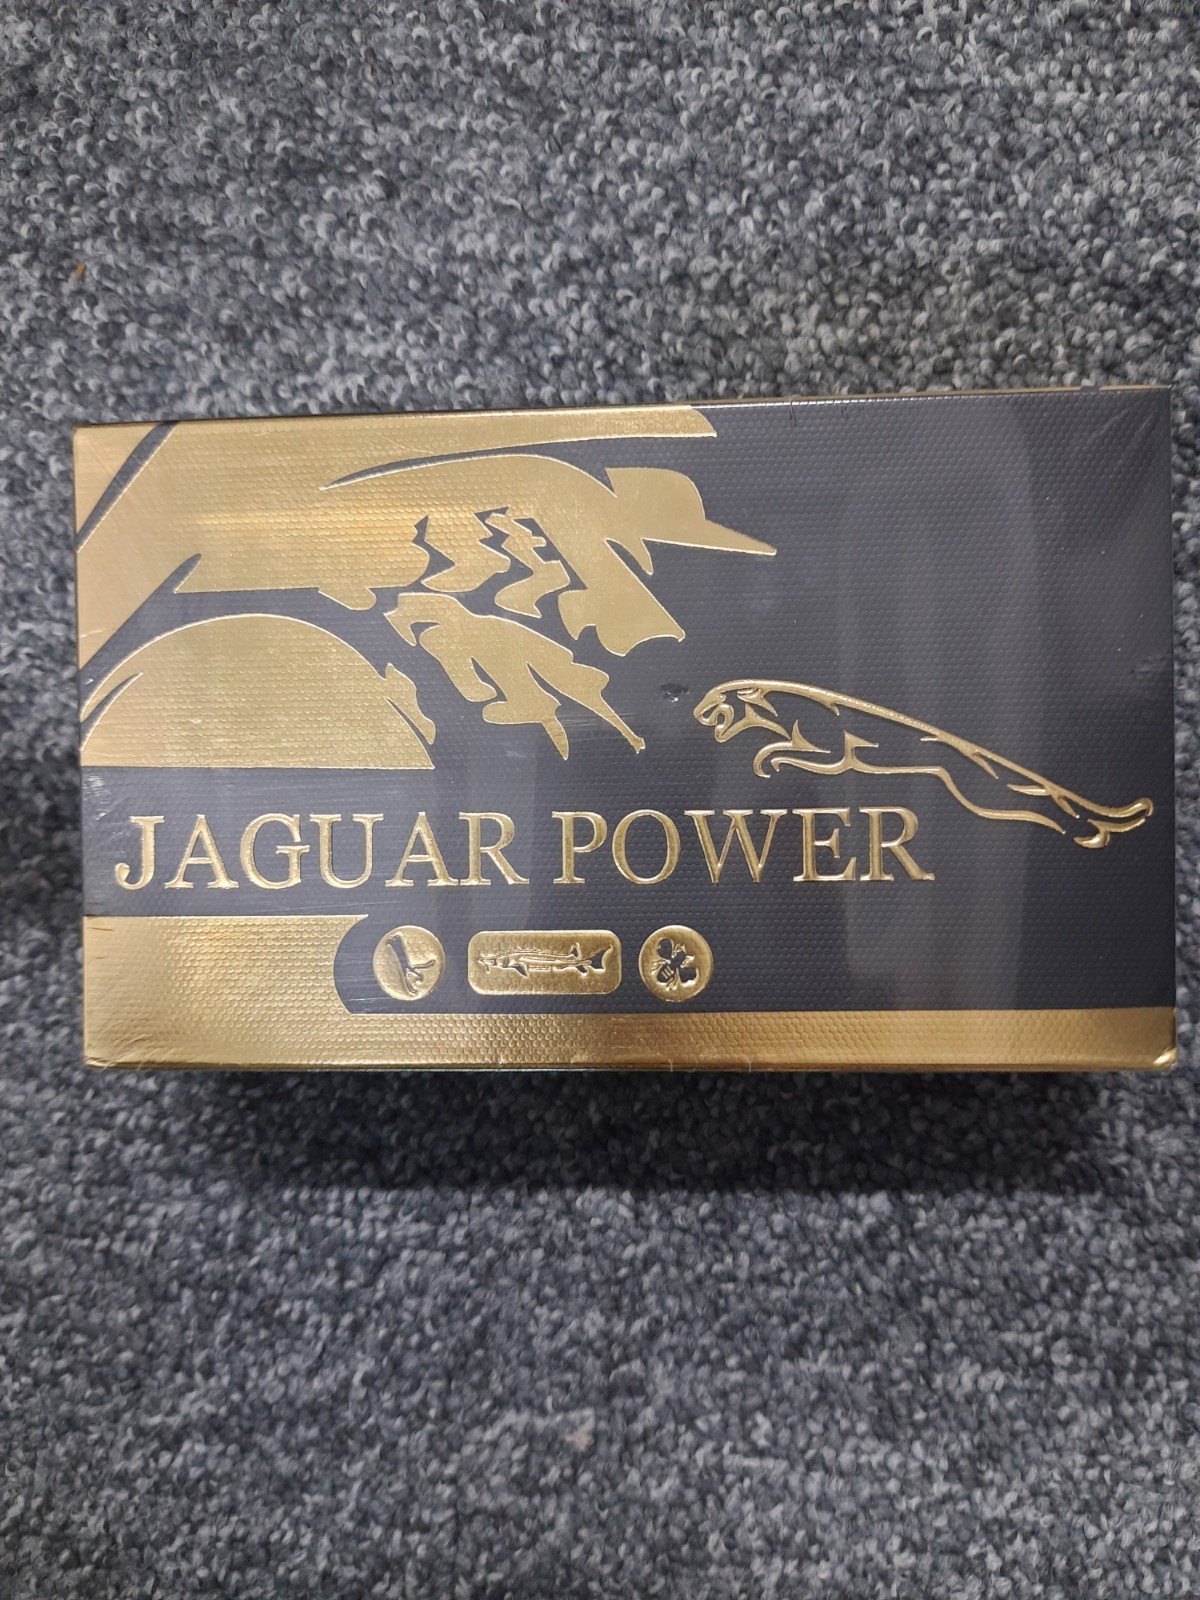 Billede af det ulovlige produkt: Jaguar Power